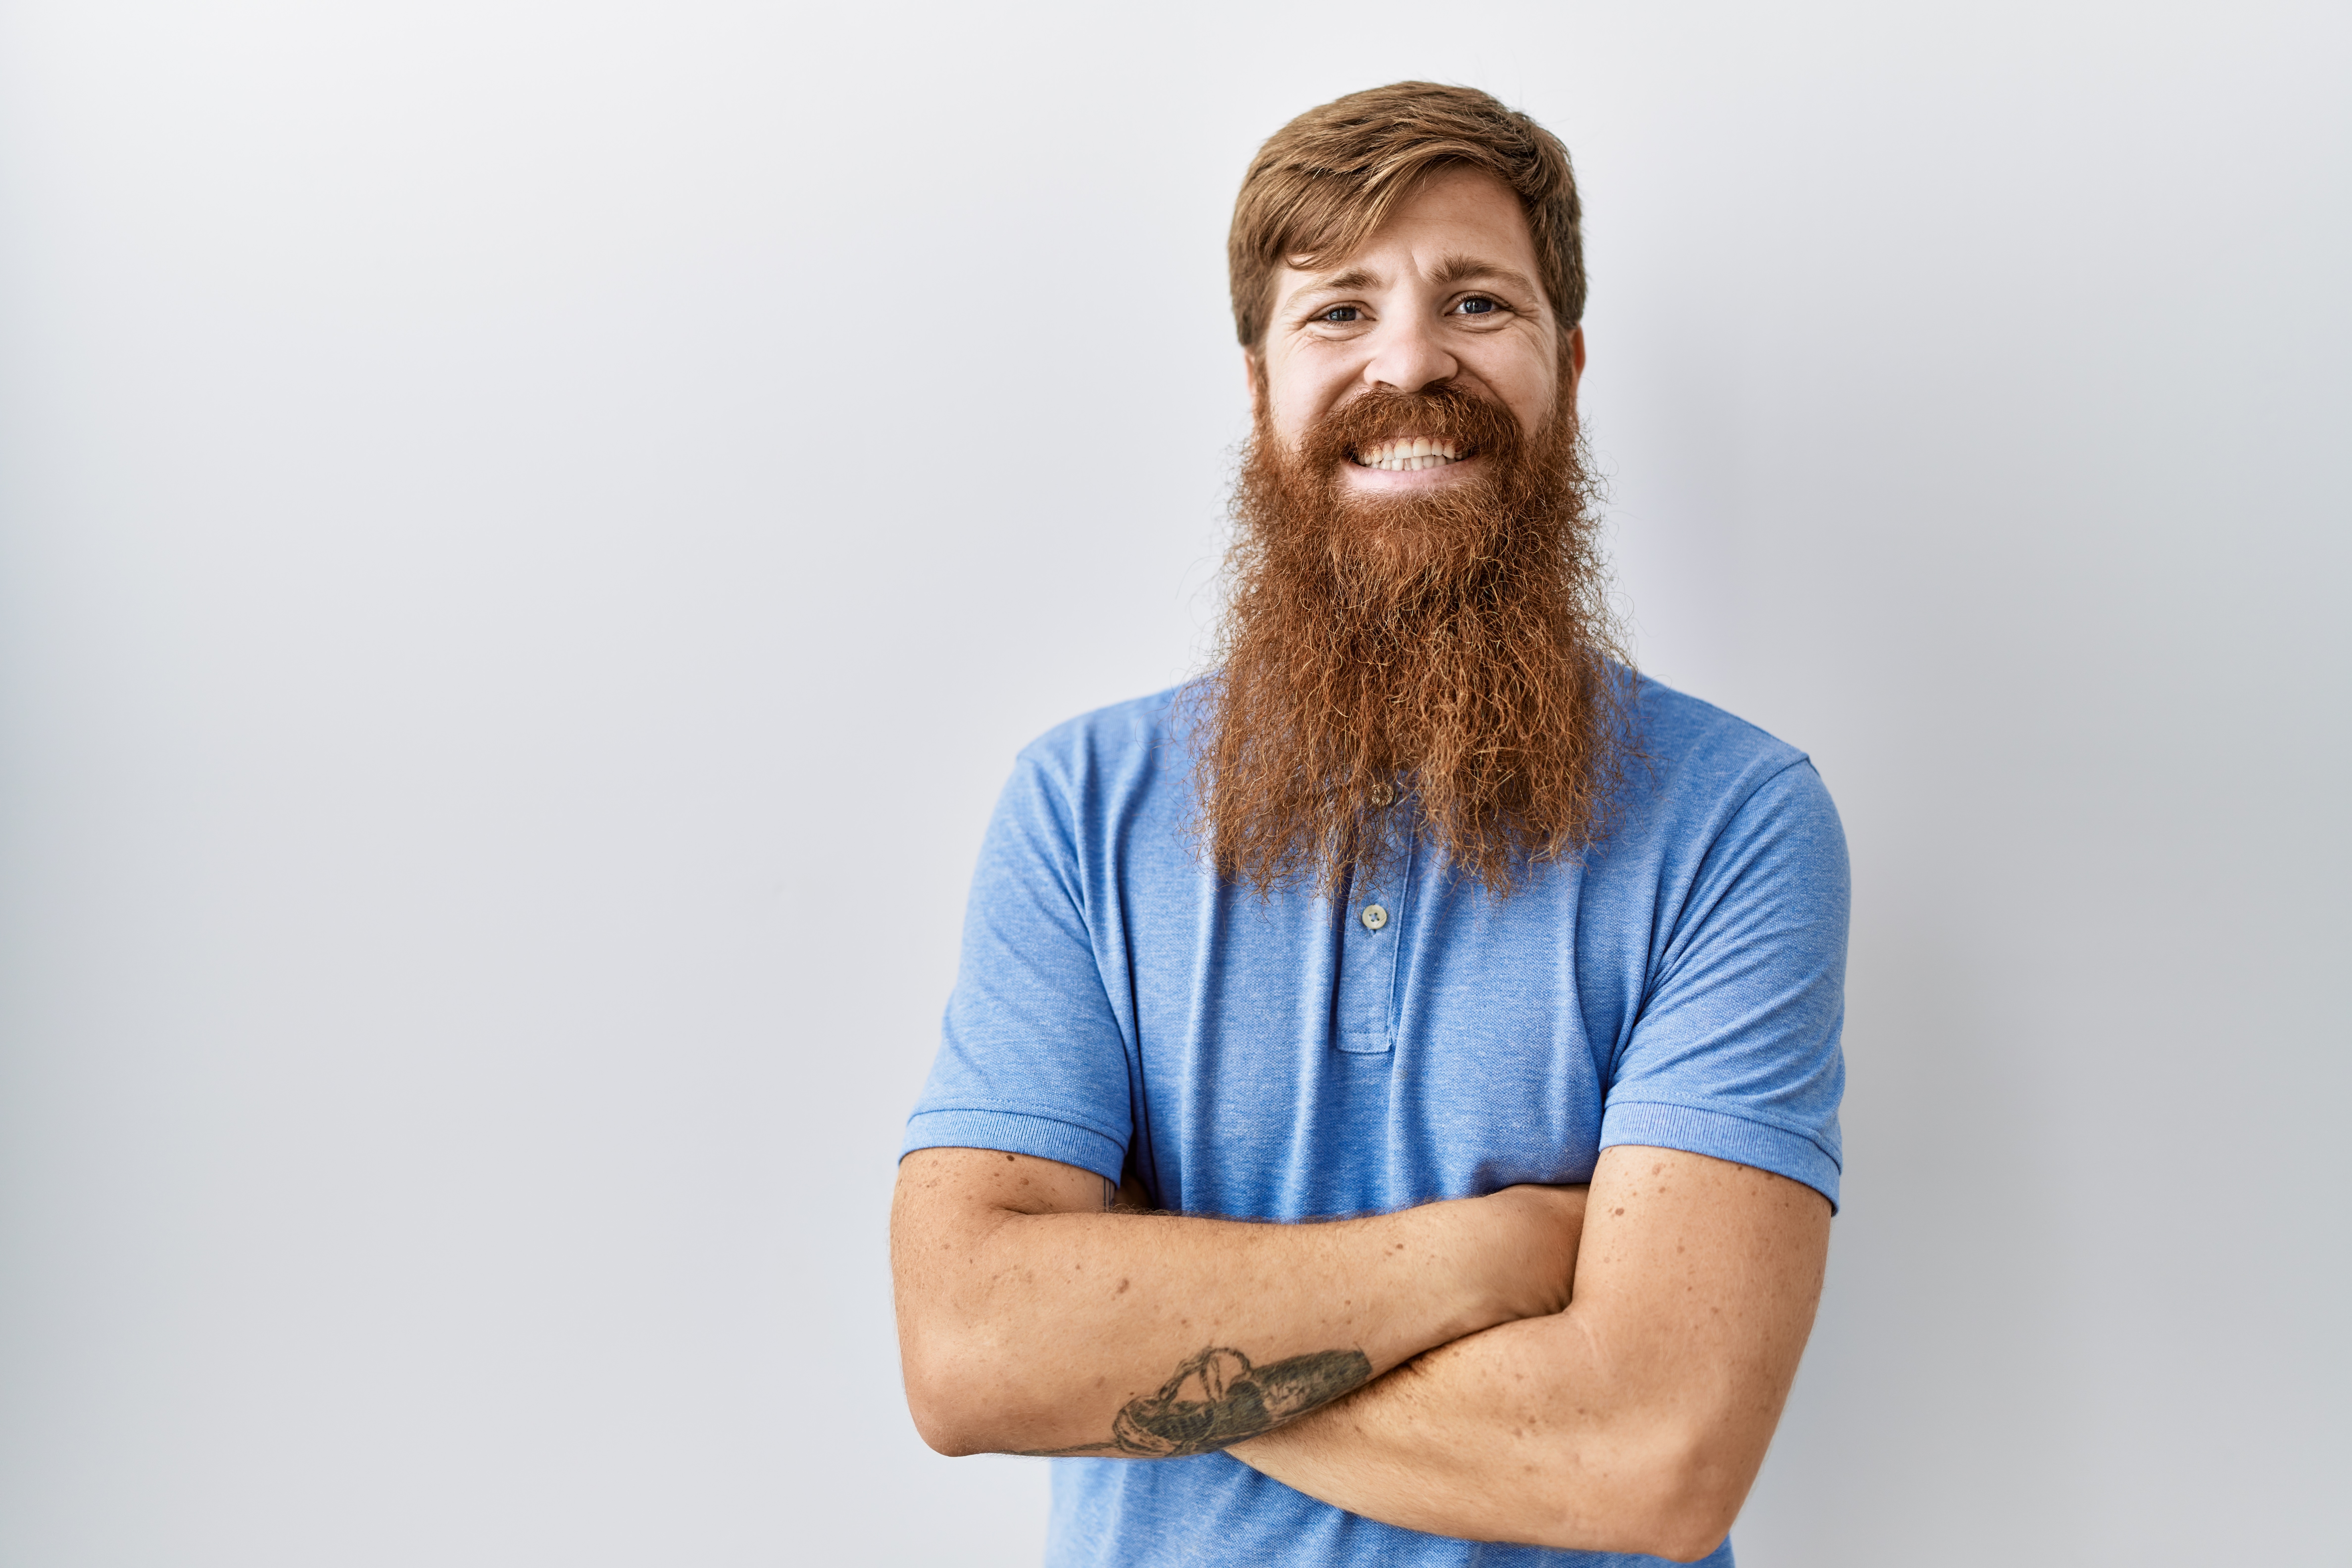 Ein Fiesling mit langem Bart, der lächelt | Quelle: Shutterstock